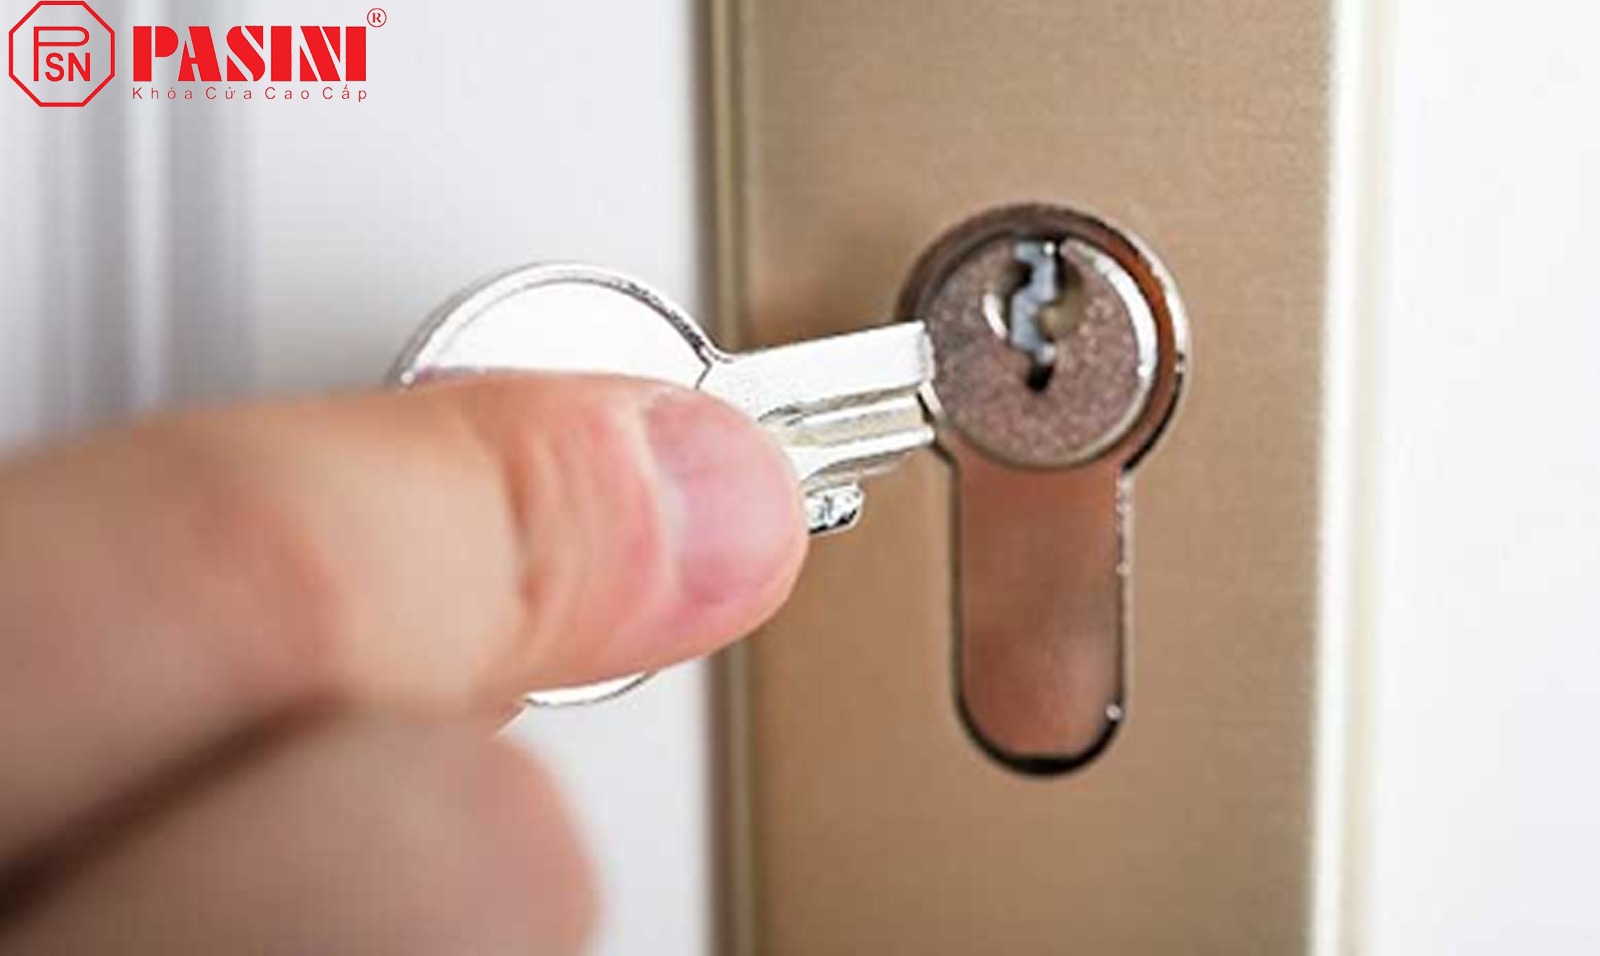 Cách mở khóa cửa tay gạt bị kẹt khi chìa khóa bị gãy